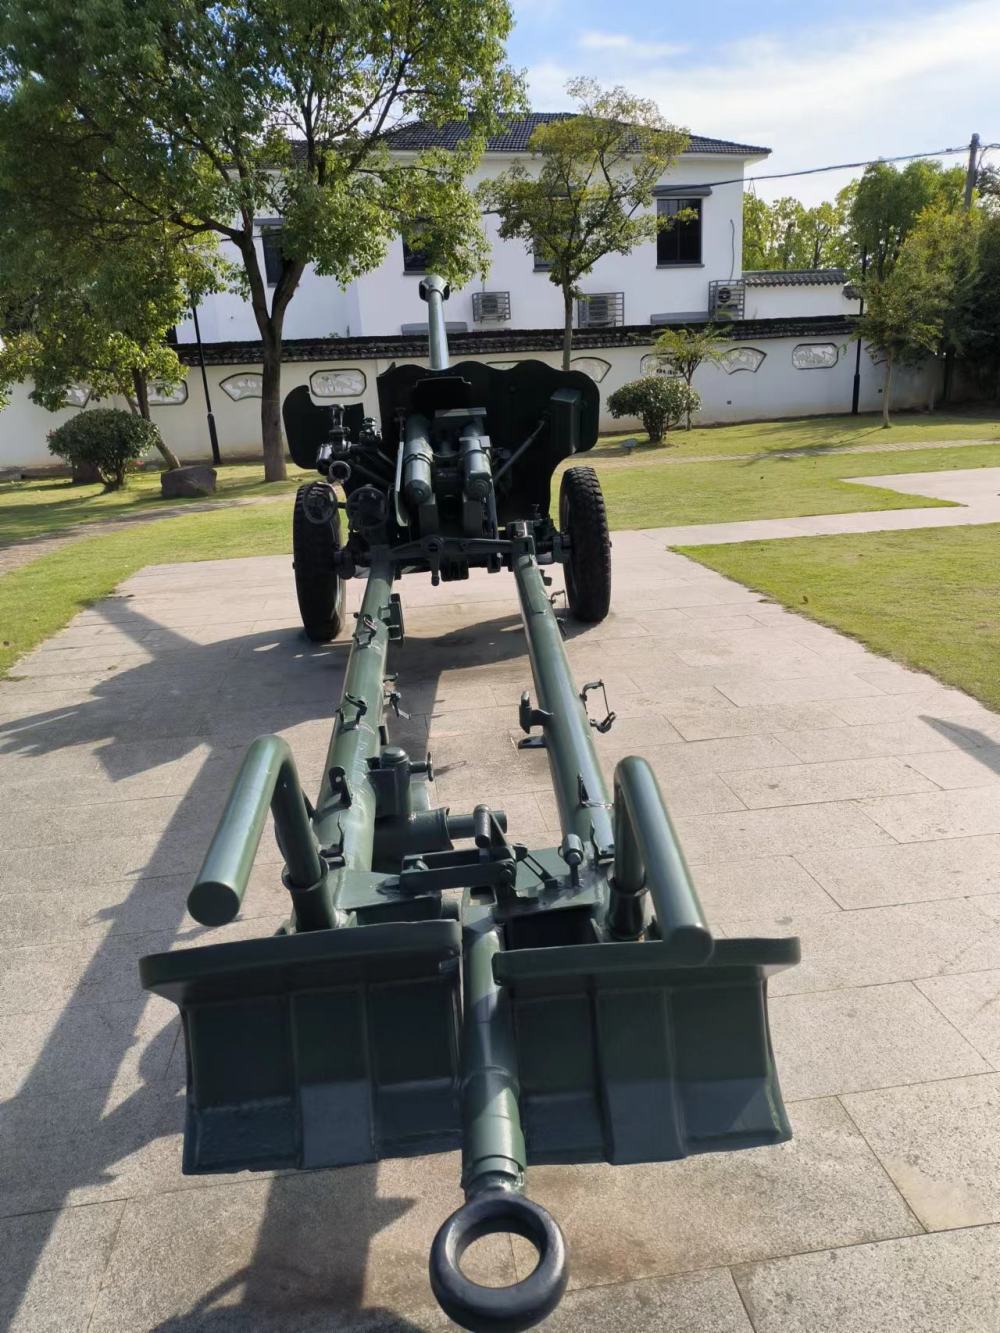 56式加农炮和54式122mm榴弹炮,是装备我军的第一代摩托化行军的火炮